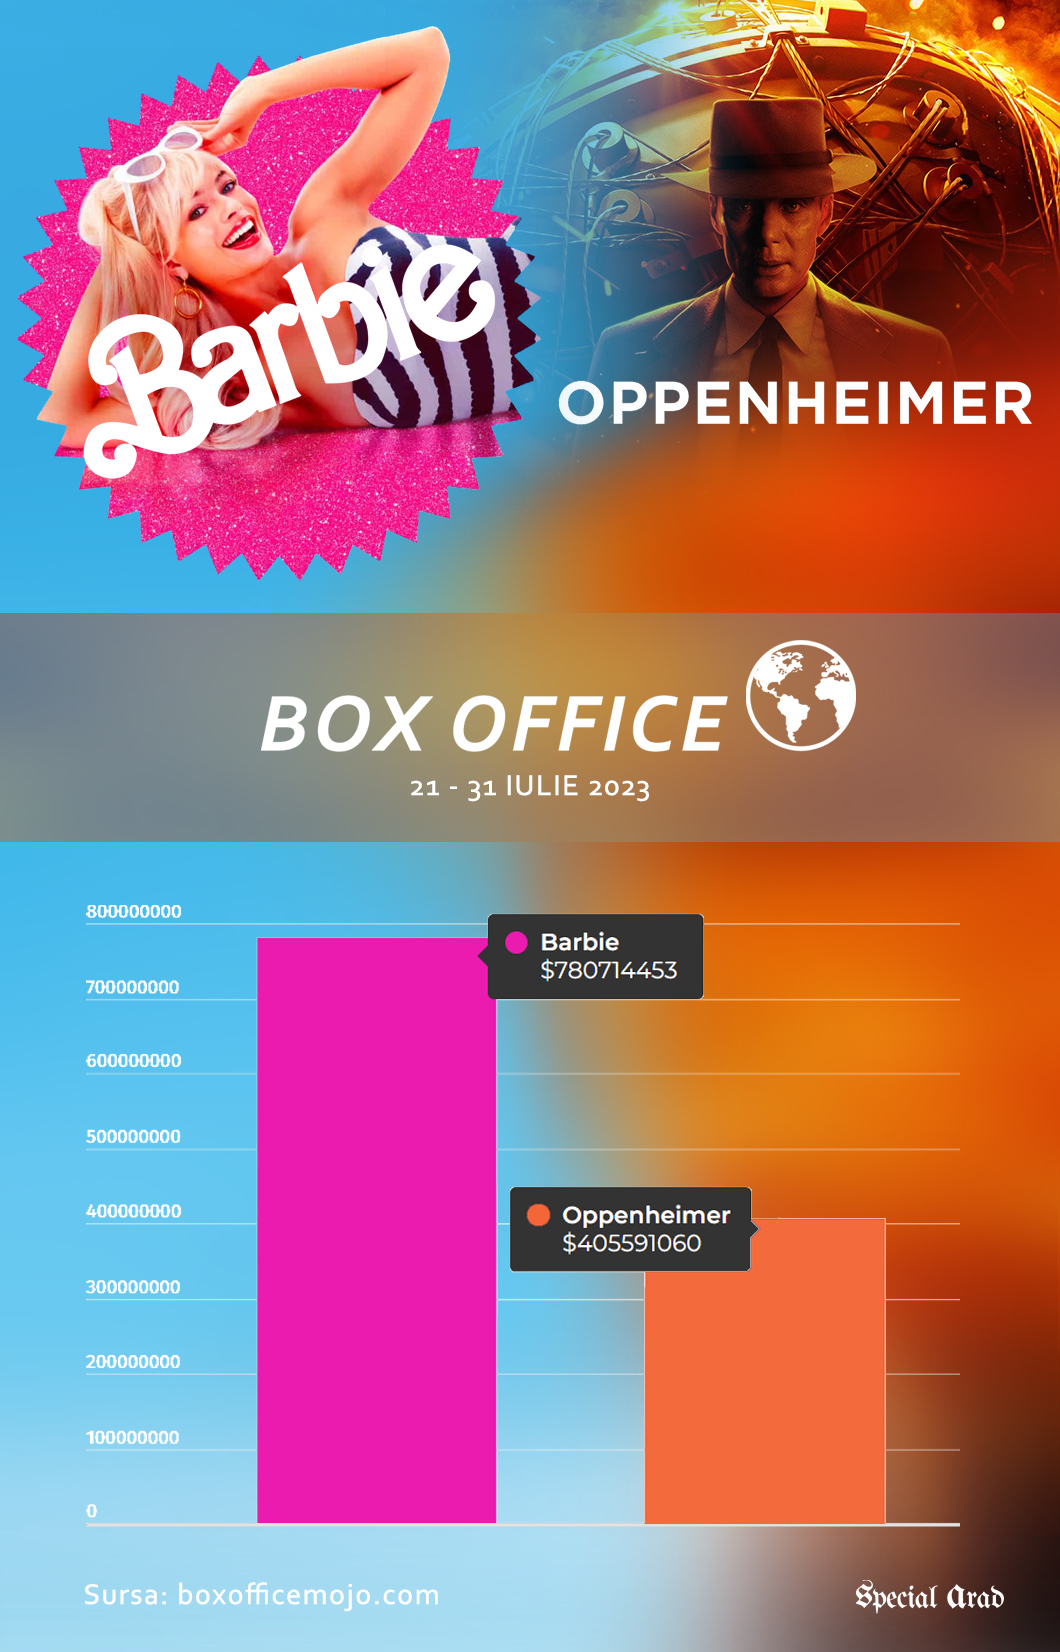 Barbie vs Oppenheimer box office worldwide 21 - 31 july